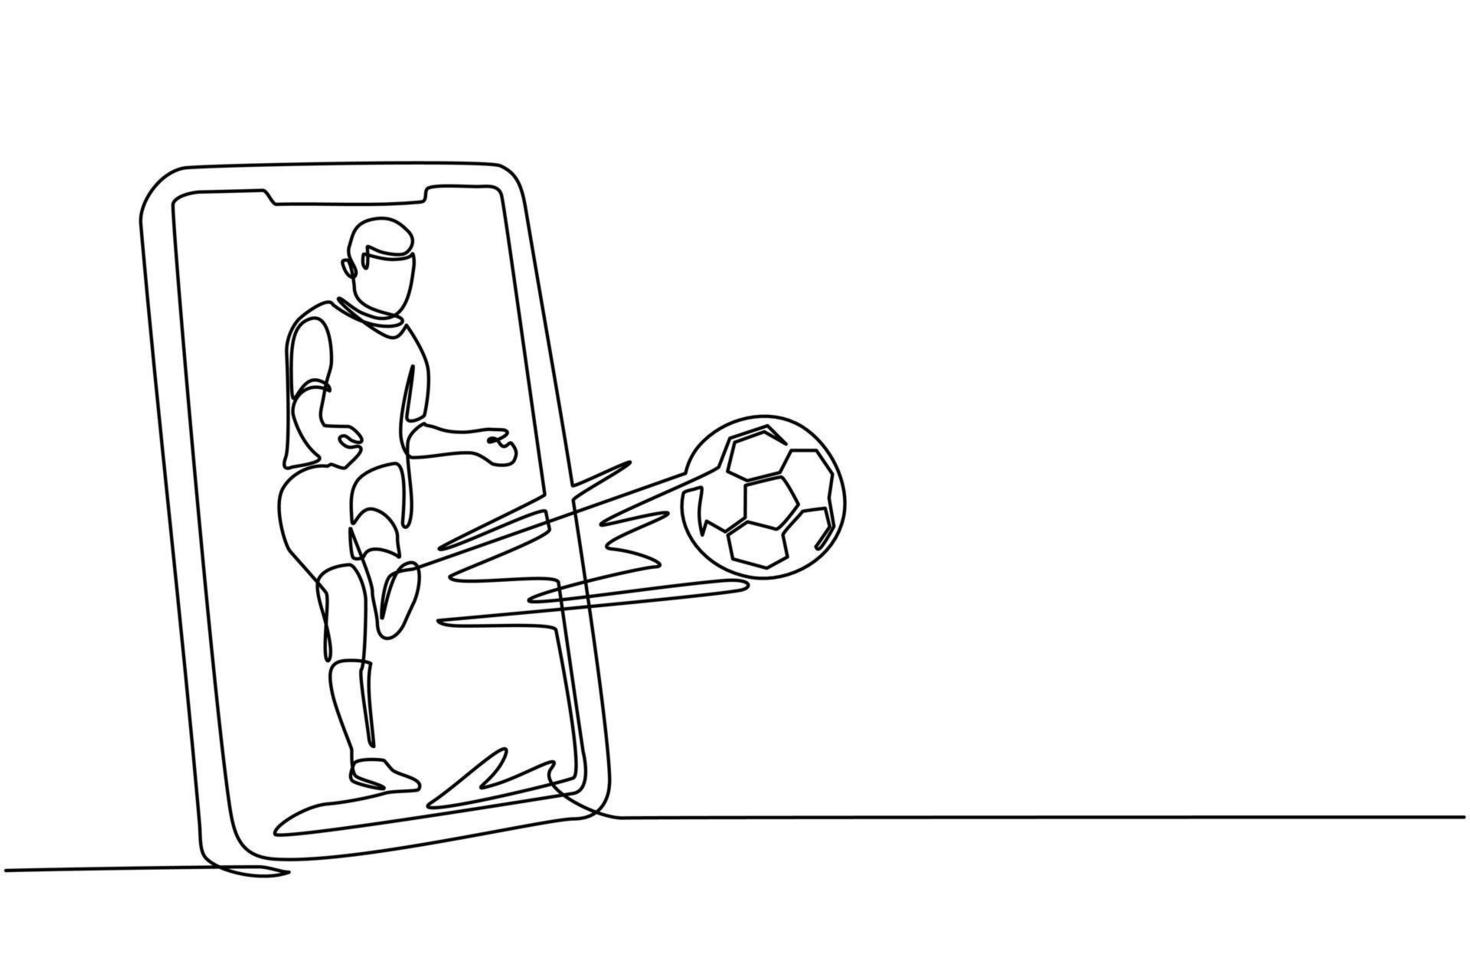 único jogador de futebol de desenho de linha contínua segurando uma bola de  futebol e smartphone.